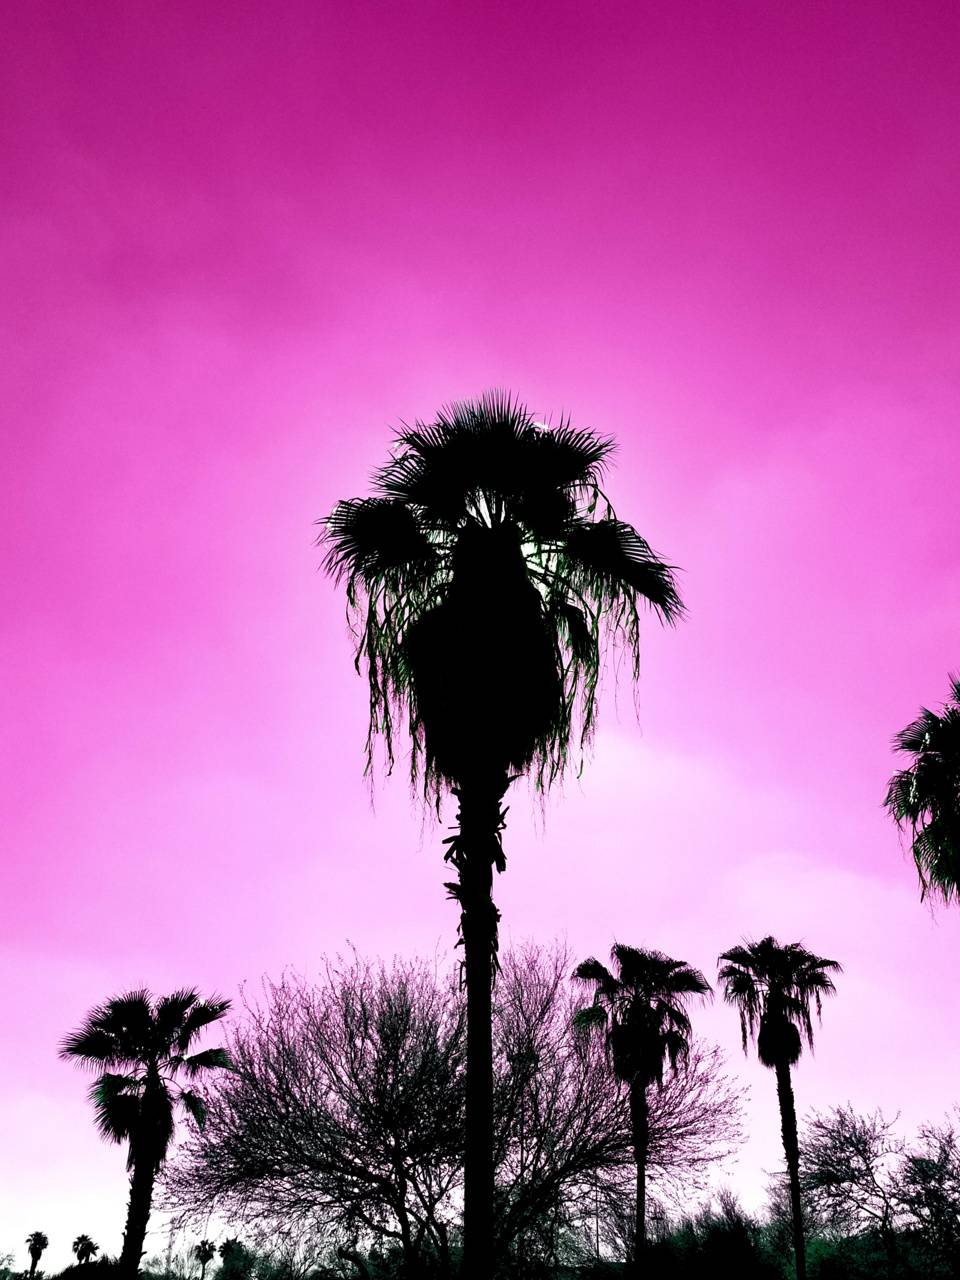 Pink Phoenix Wallpapers - Top Free Pink Phoenix Backgrounds ...